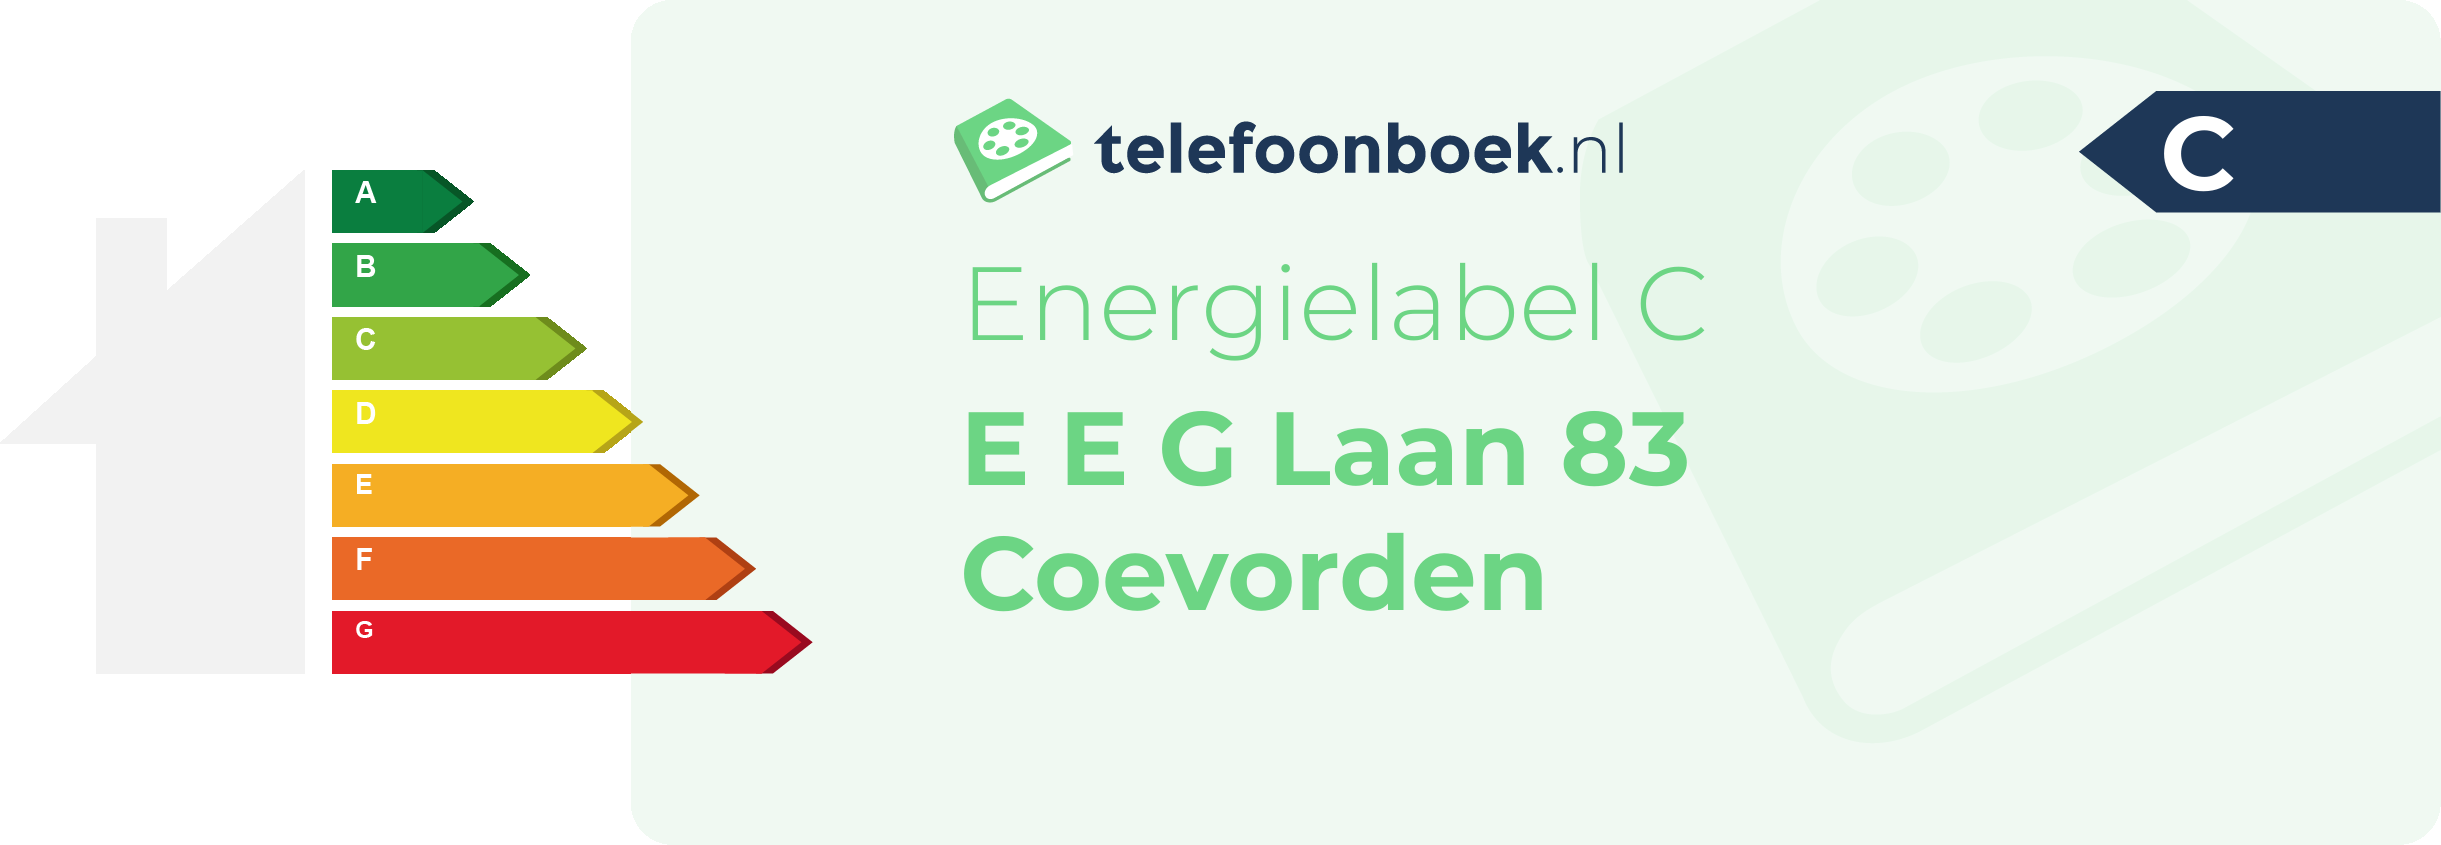 Energielabel E E G Laan 83 Coevorden